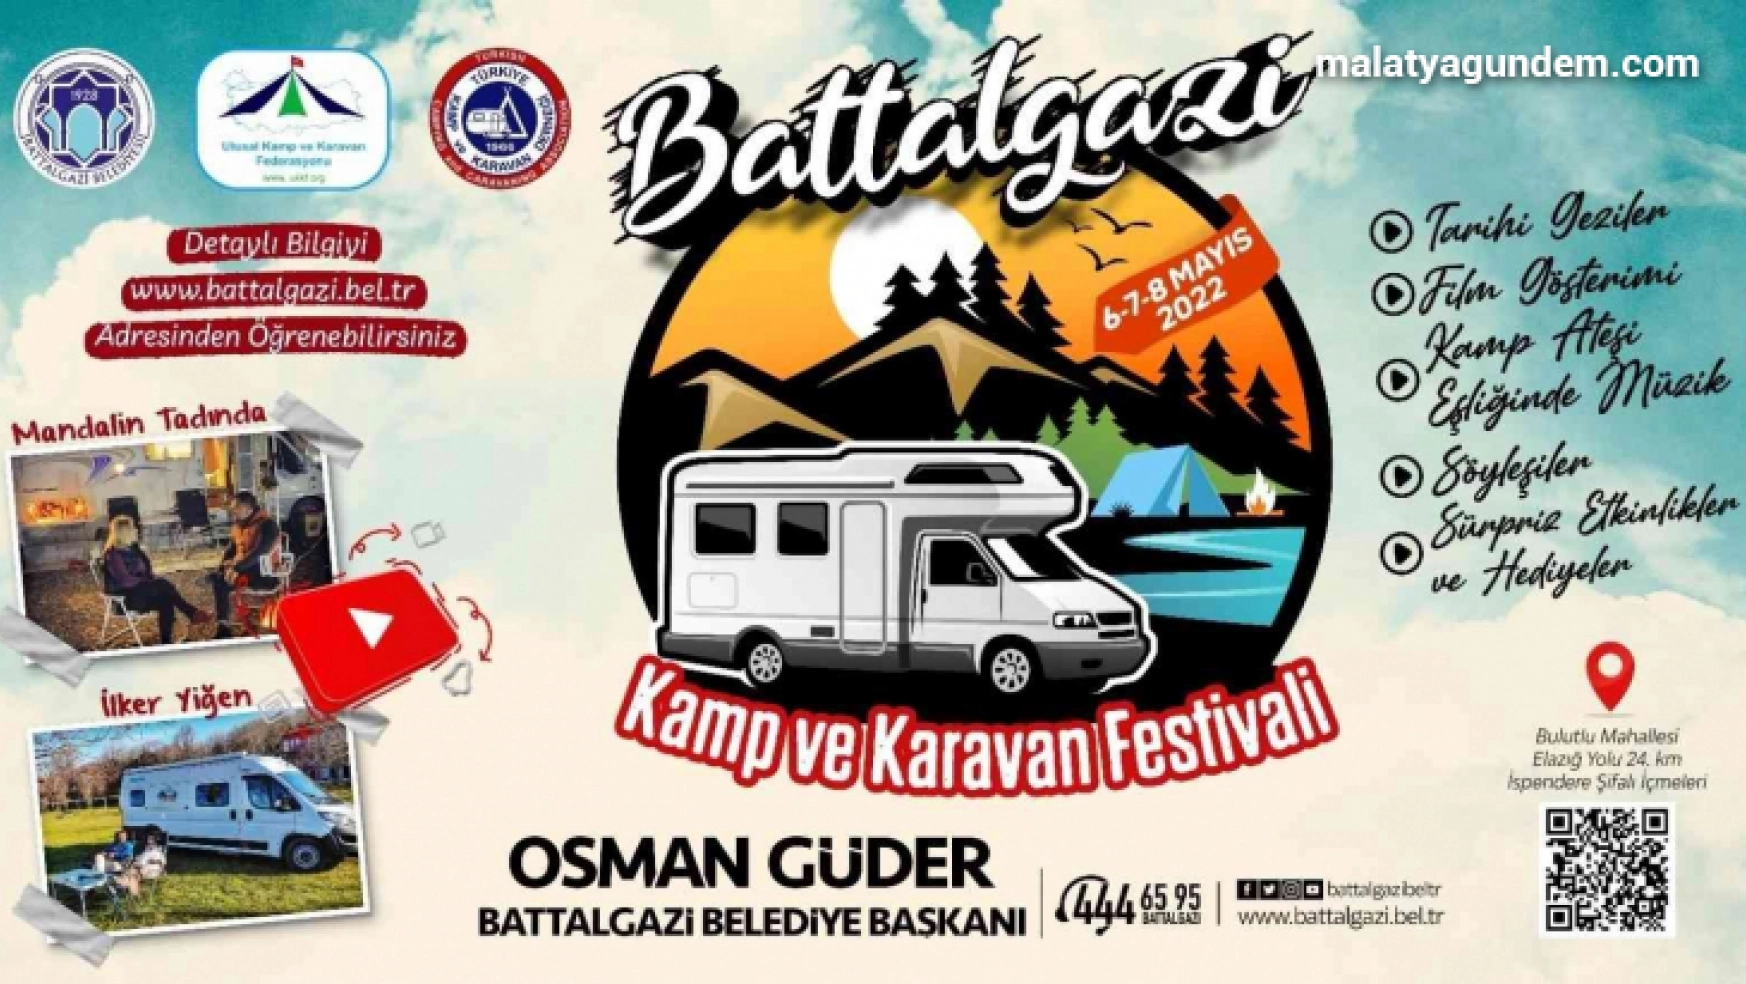 Kamp ve karavan tutkunları Battalgazi'de buluşuyor